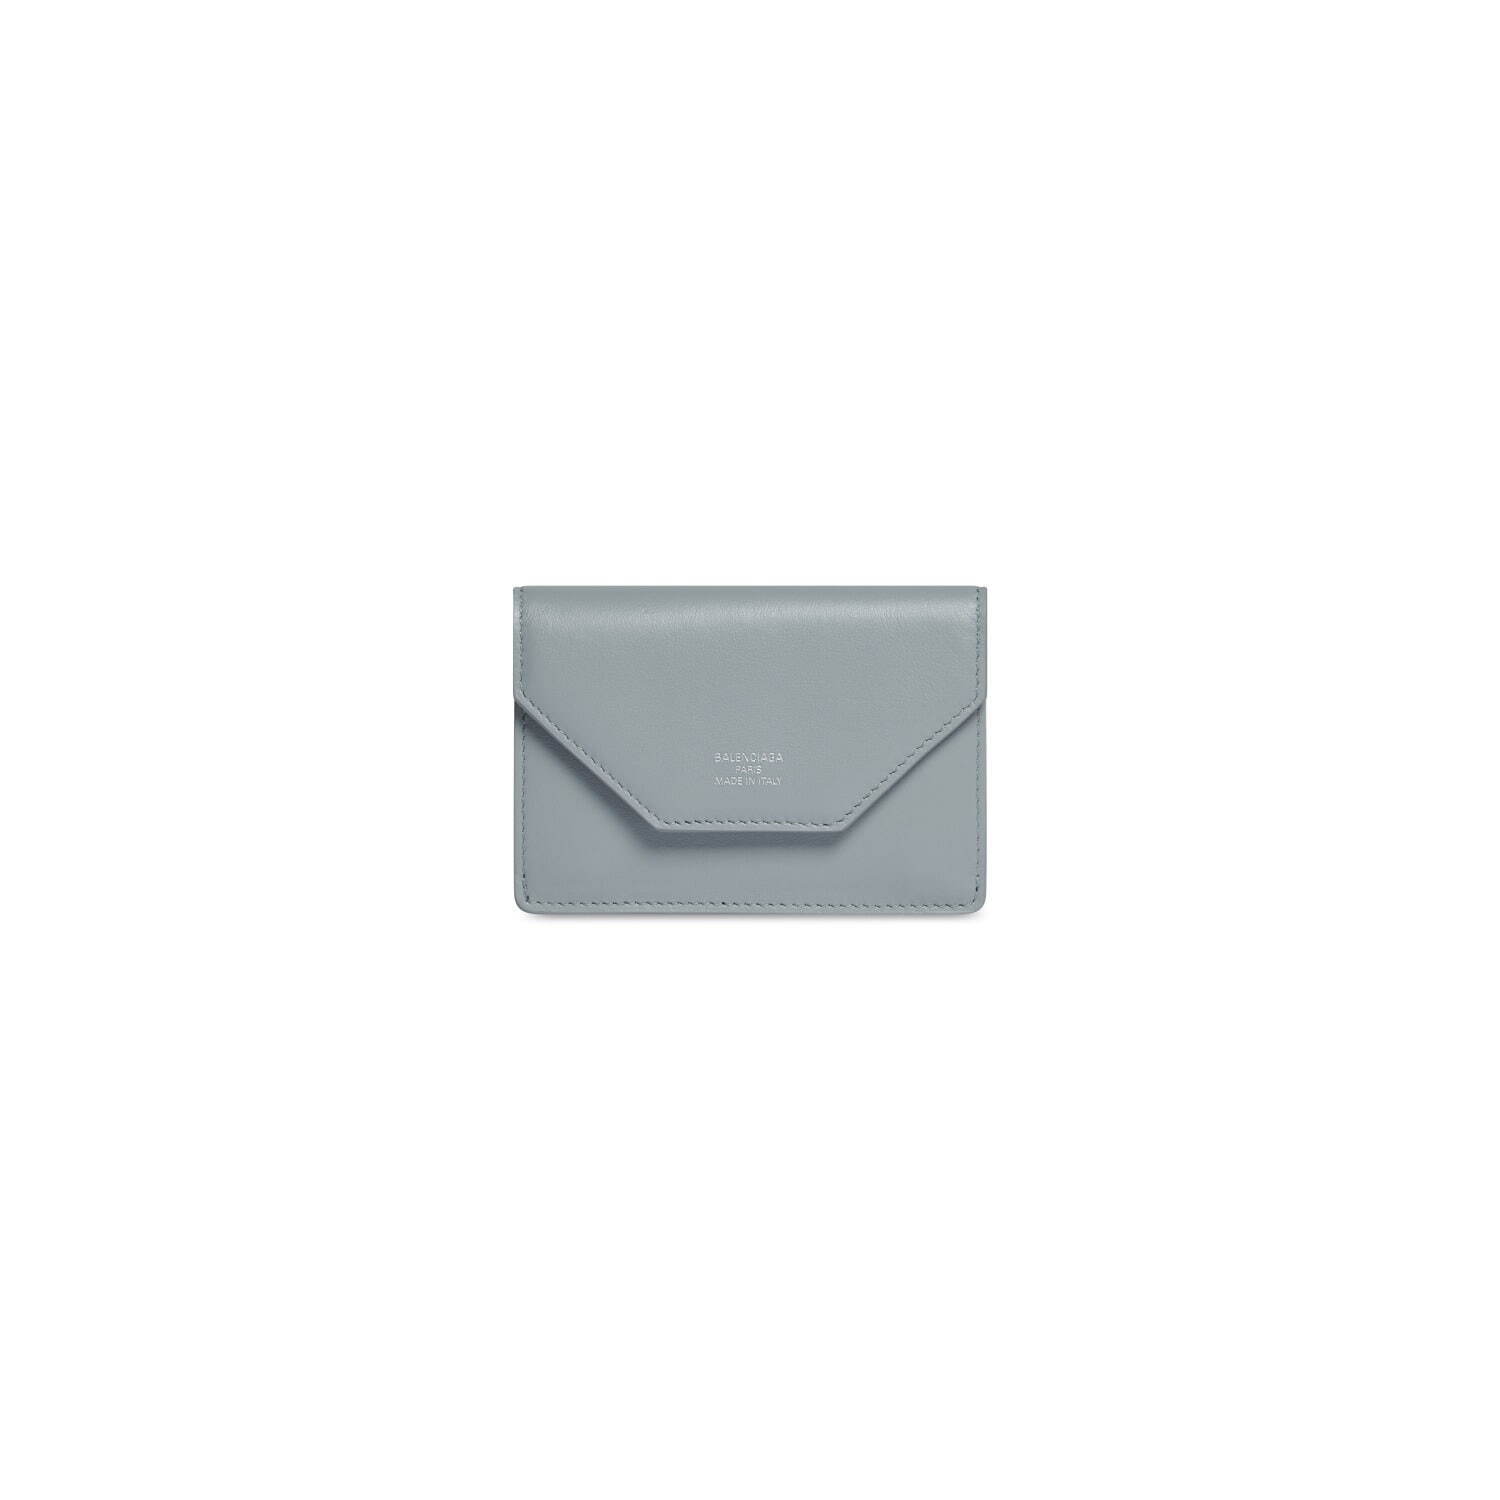 エンベロープ ミニ ウォレット(W10.5×H7.5×D3cm) 57,200円
Courtesy of Balenciaga